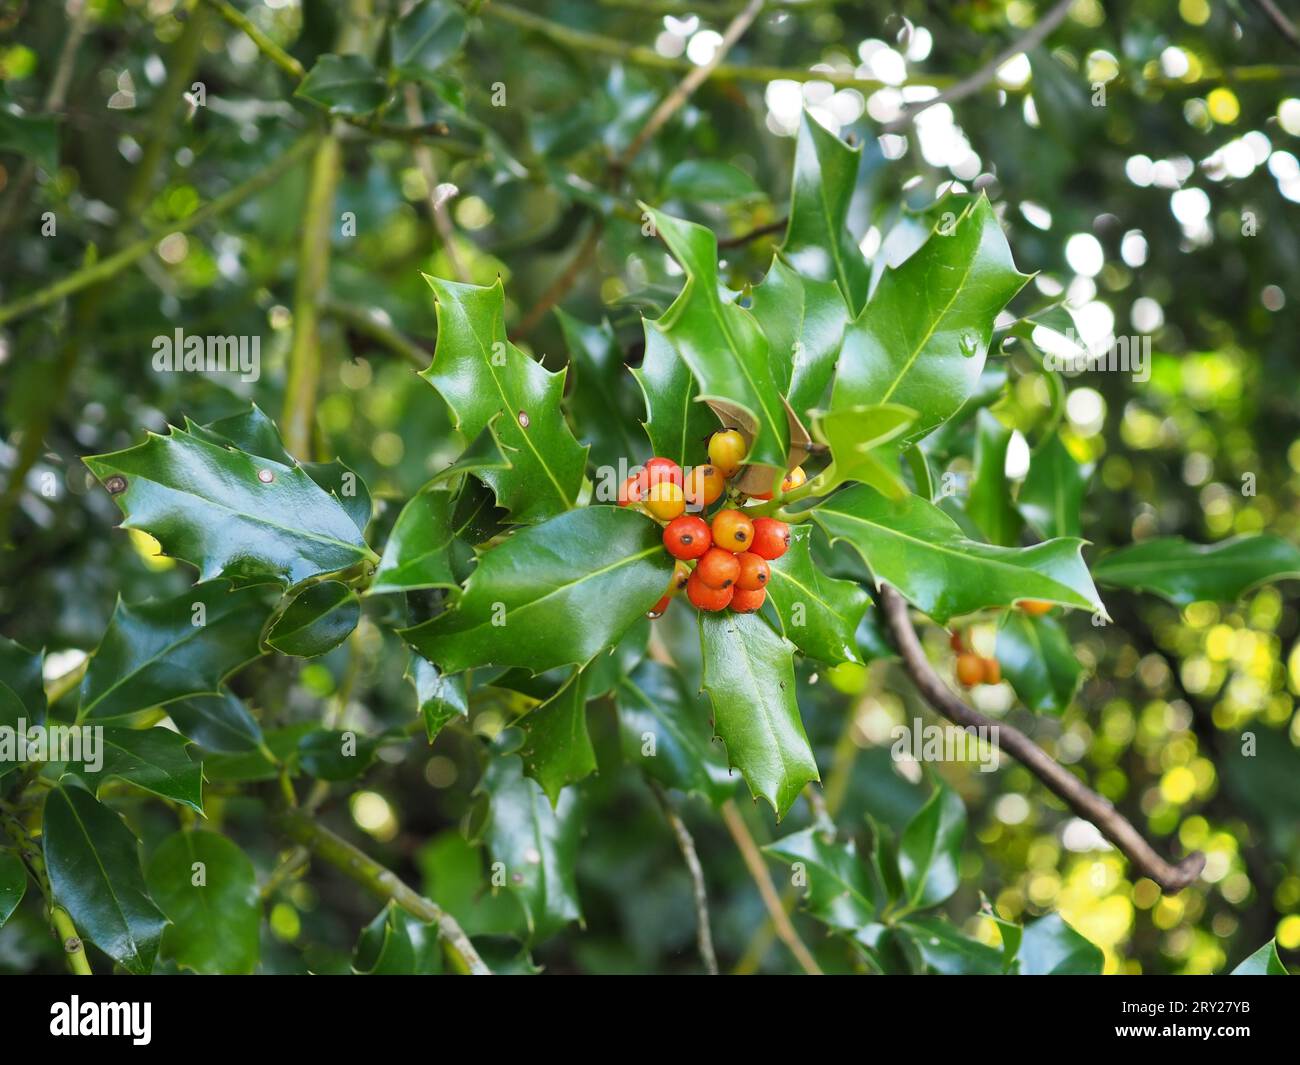 Ilex aquifolium (holly) che cresce all'aperto in una brughiera di campagna britannica in autunno con bacche gialle e arancio mature e foglie lucenti e appuntite Foto Stock